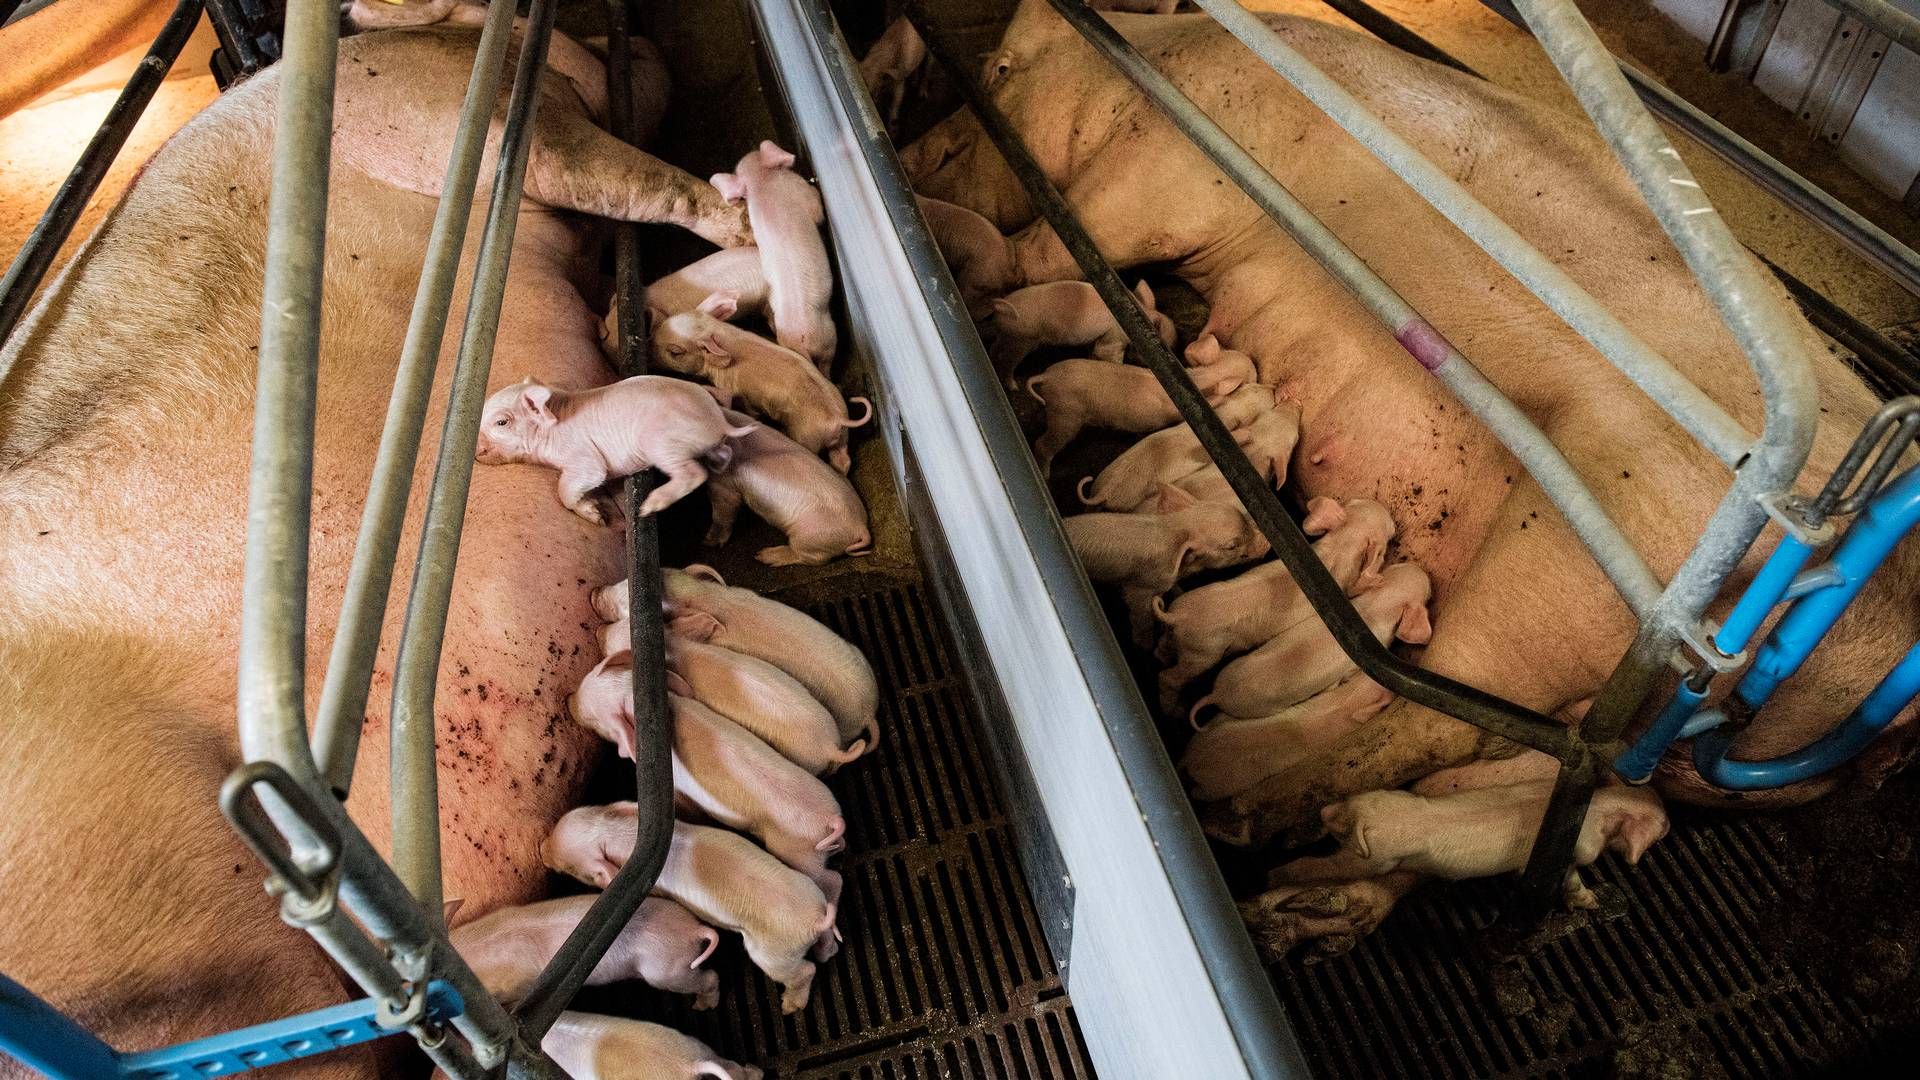 Satsningen på grise har kostet Danhatch et trecifret millionbeløb gennem årene. | Foto: Casper Dalhoff